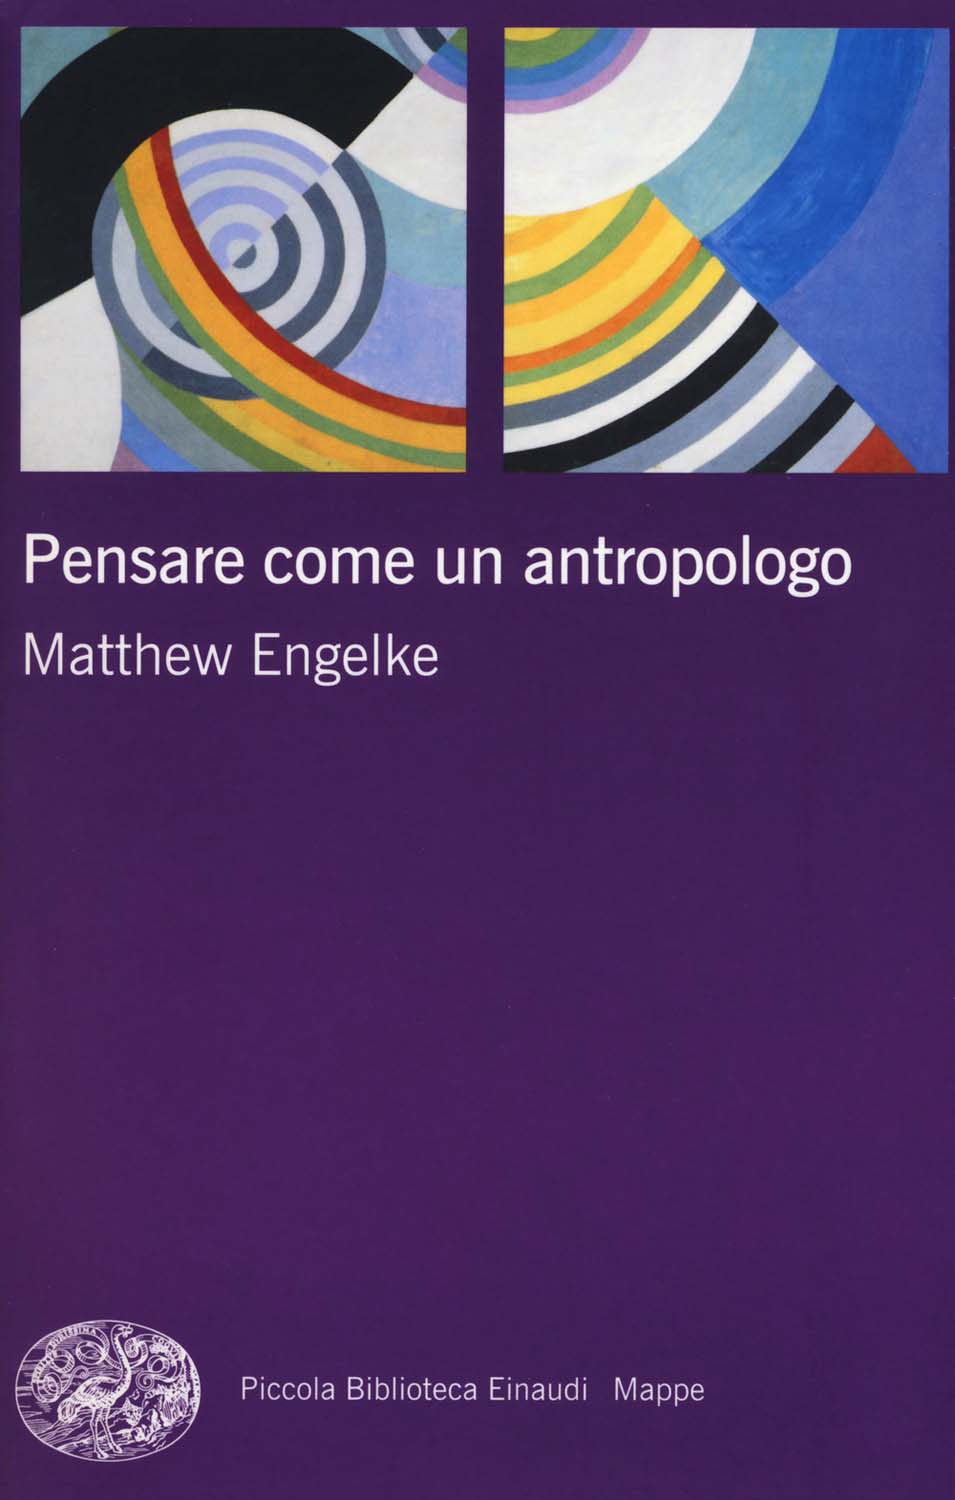 Libri Matthew Engelke - Pensare Come Un Antropologo NUOVO SIGILLATO, EDIZIONE DEL 19/06/2018 SUBITO DISPONIBILE